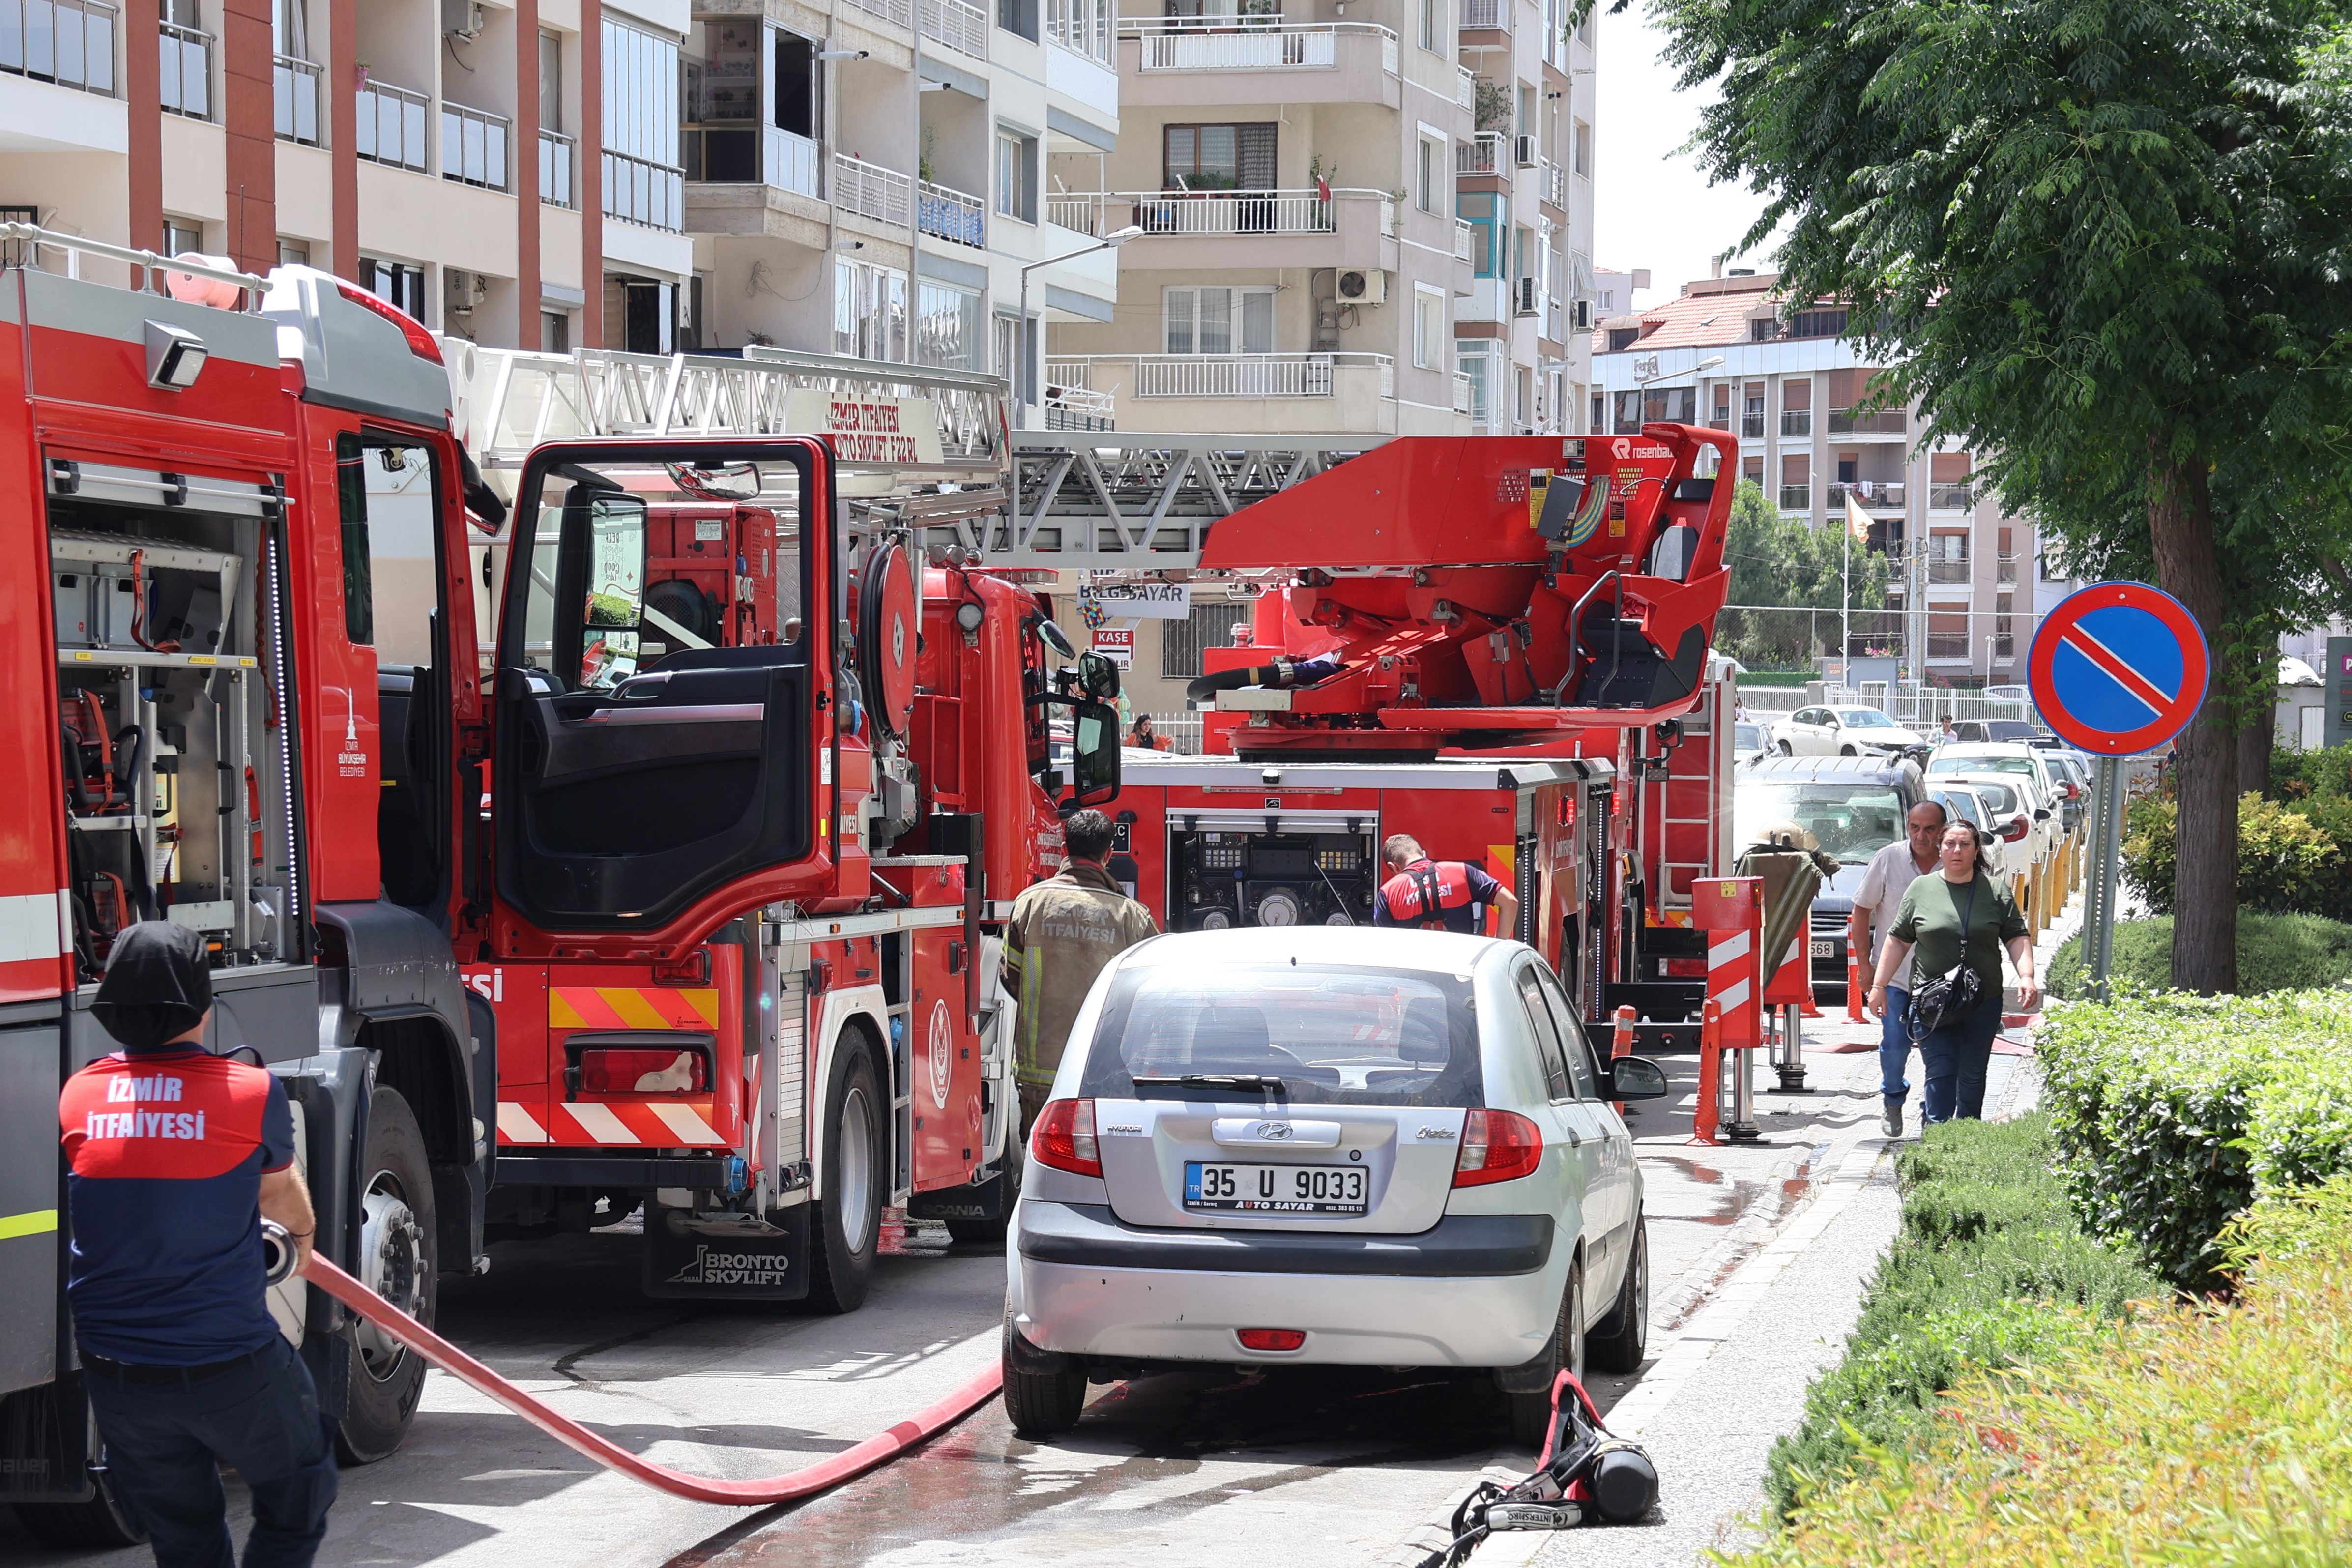 İzmir'de bulunan AVM'deki yangın paniğe sebep oldu